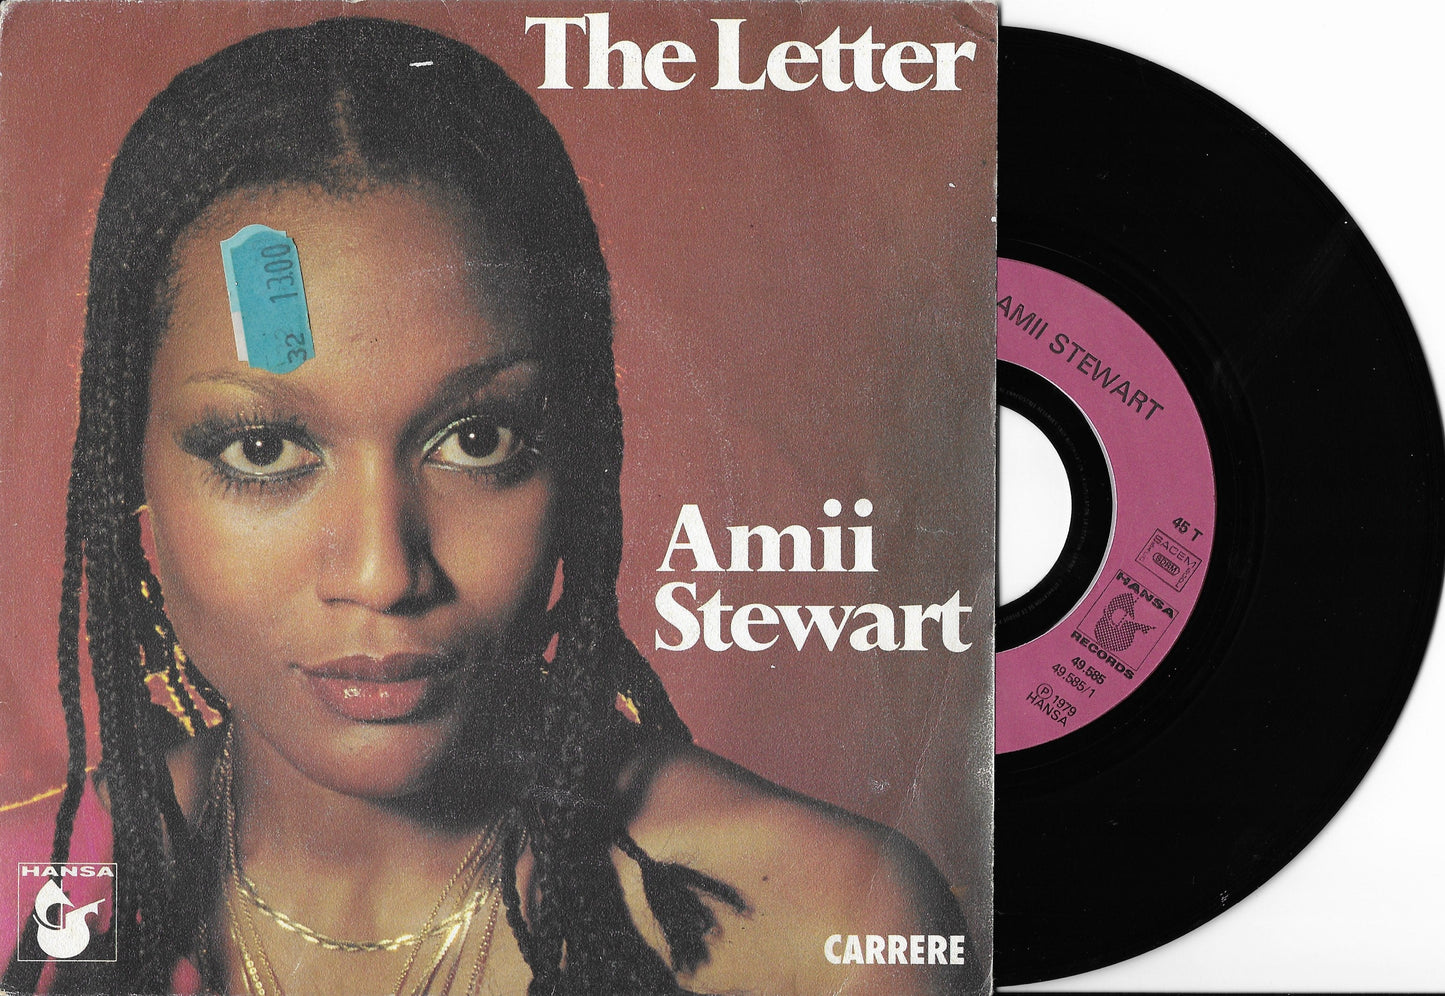 AMII STEWART - The Letter